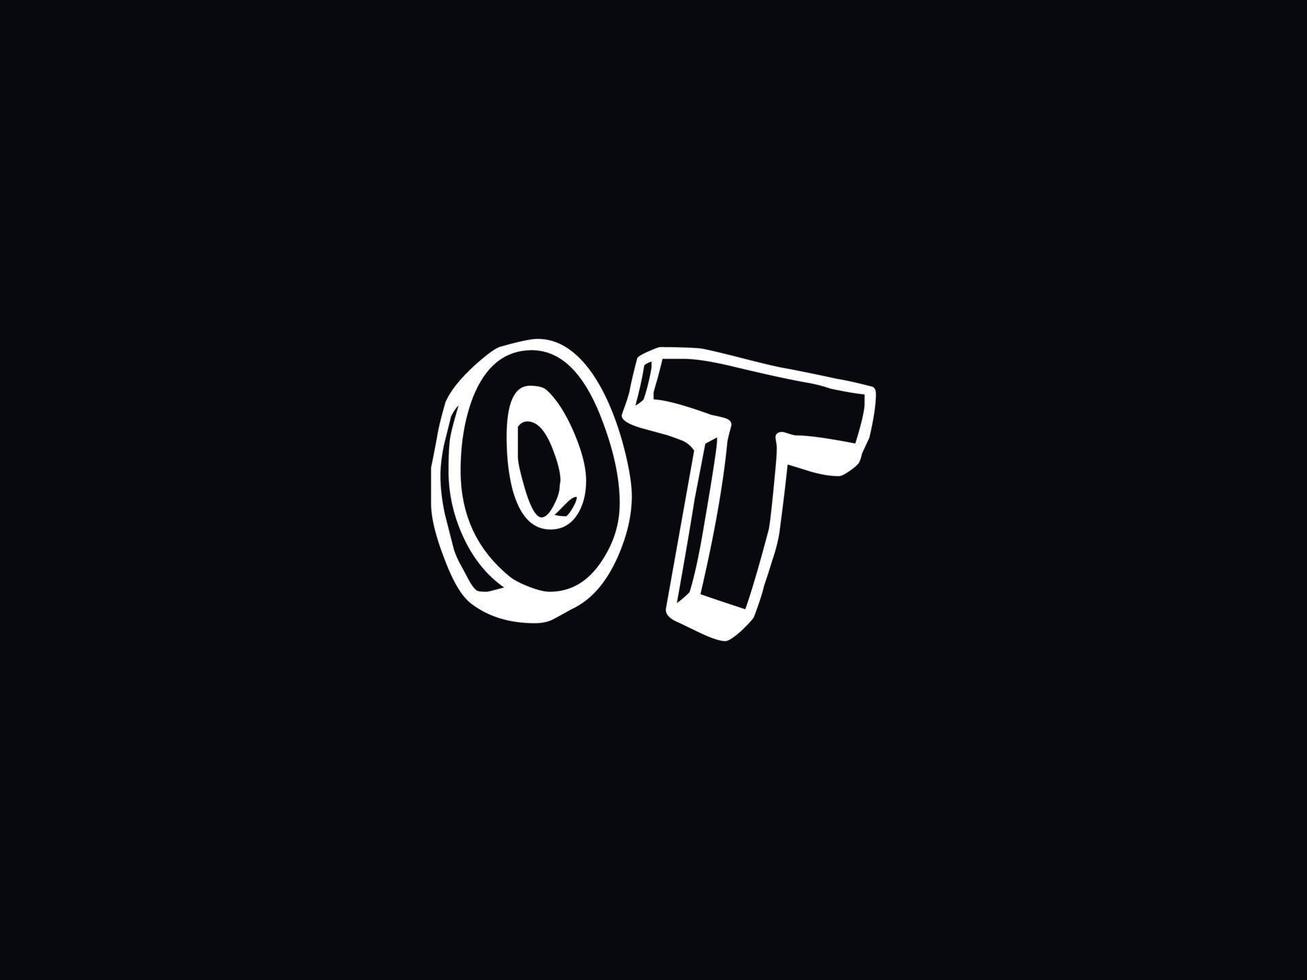 Alphabet Ot Logo Image, Letter OT Initial Logo Template vector